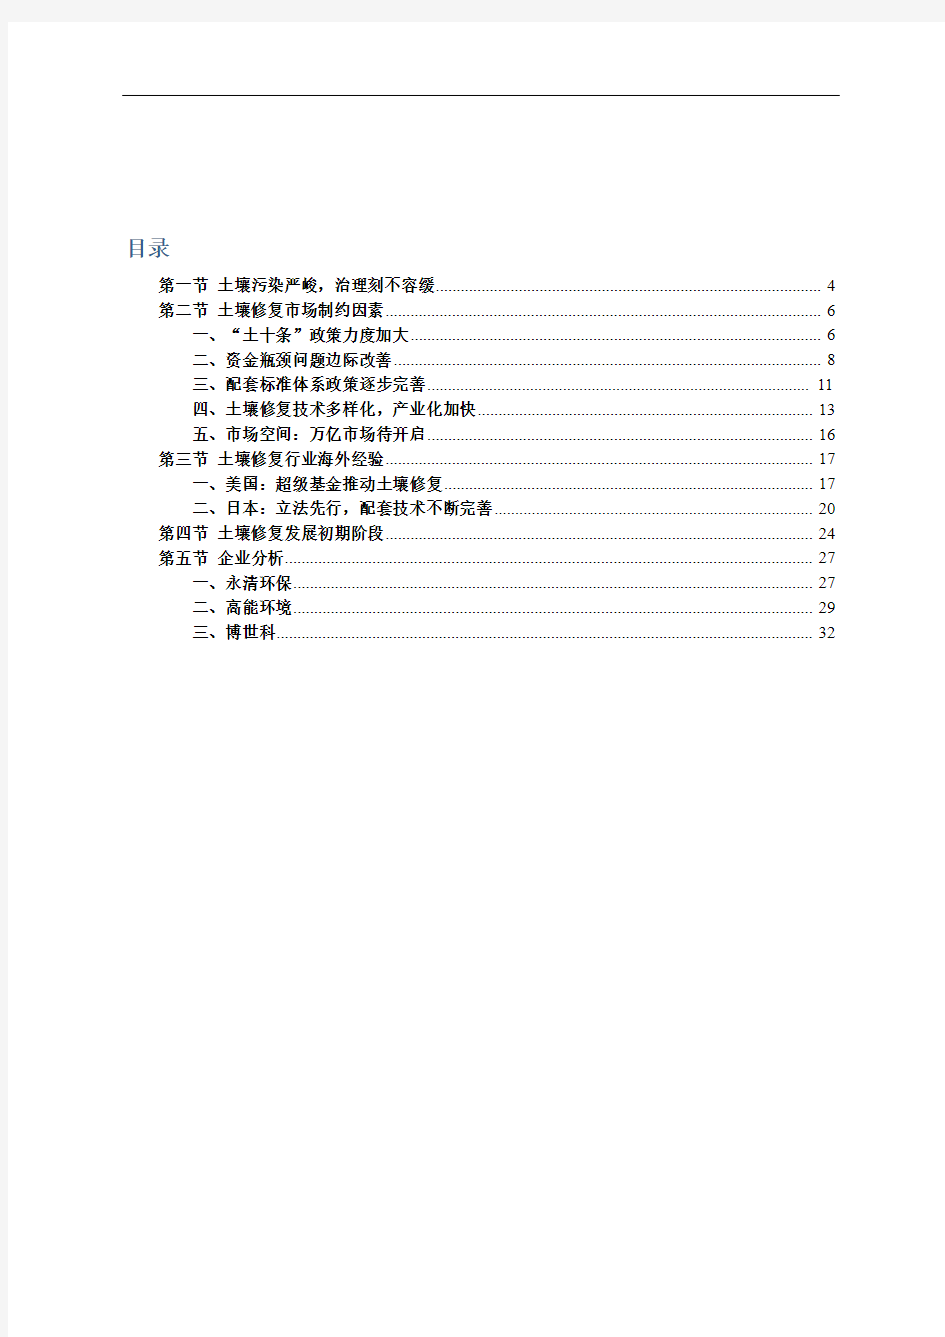 中国土壤修复行业市场分析报告